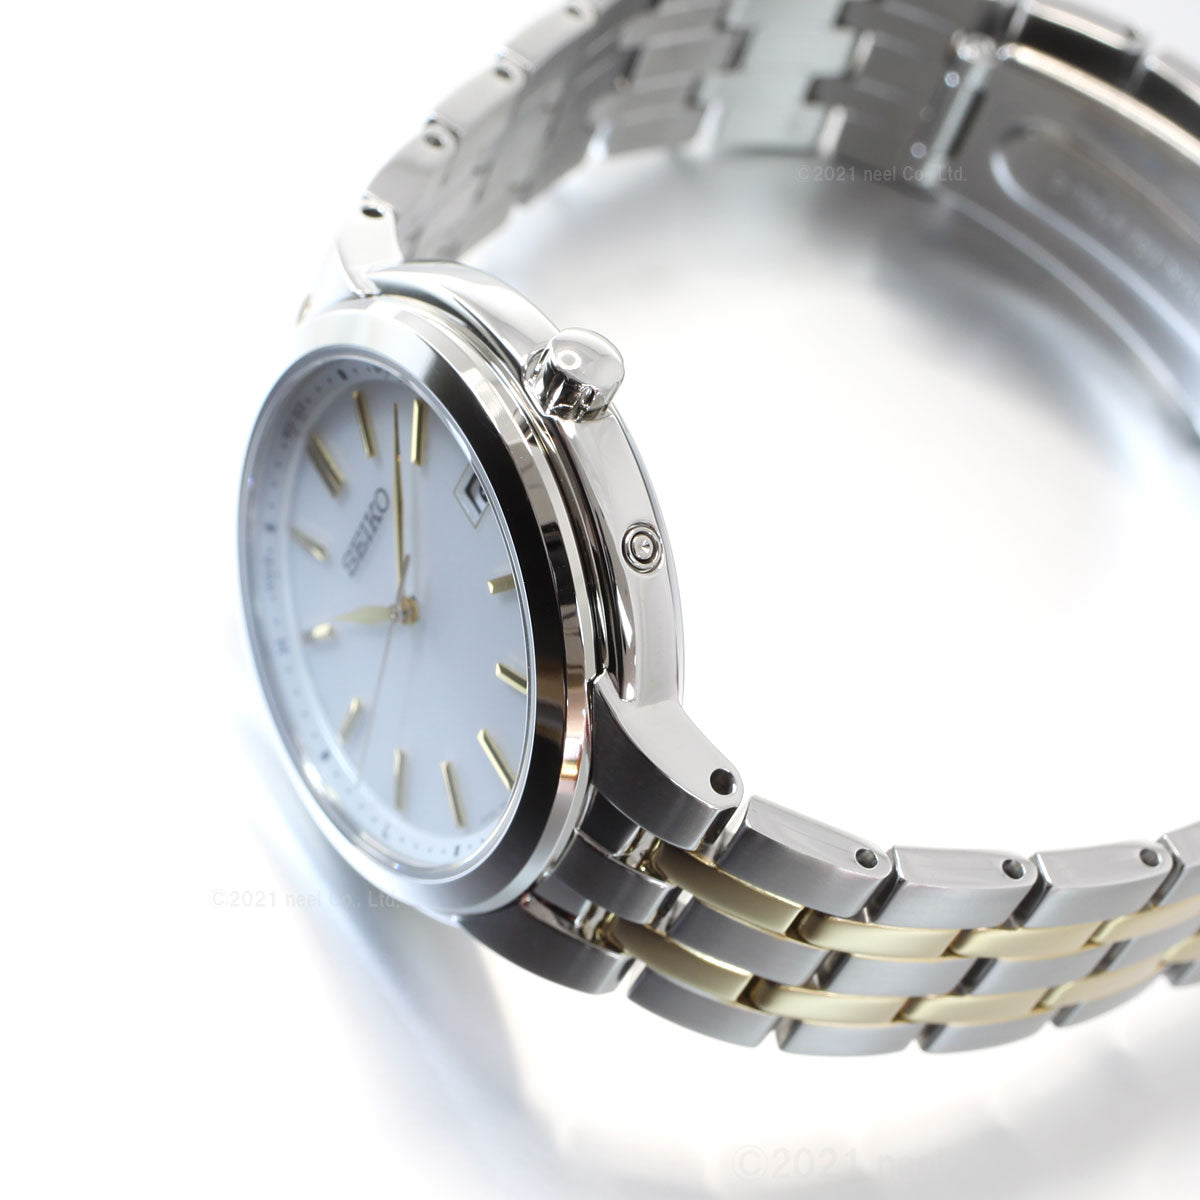 セイコー セレクション SEIKO SELECTION 電波 ソーラー 電波時計 腕時計 ペアモデル メンズ SBTM285